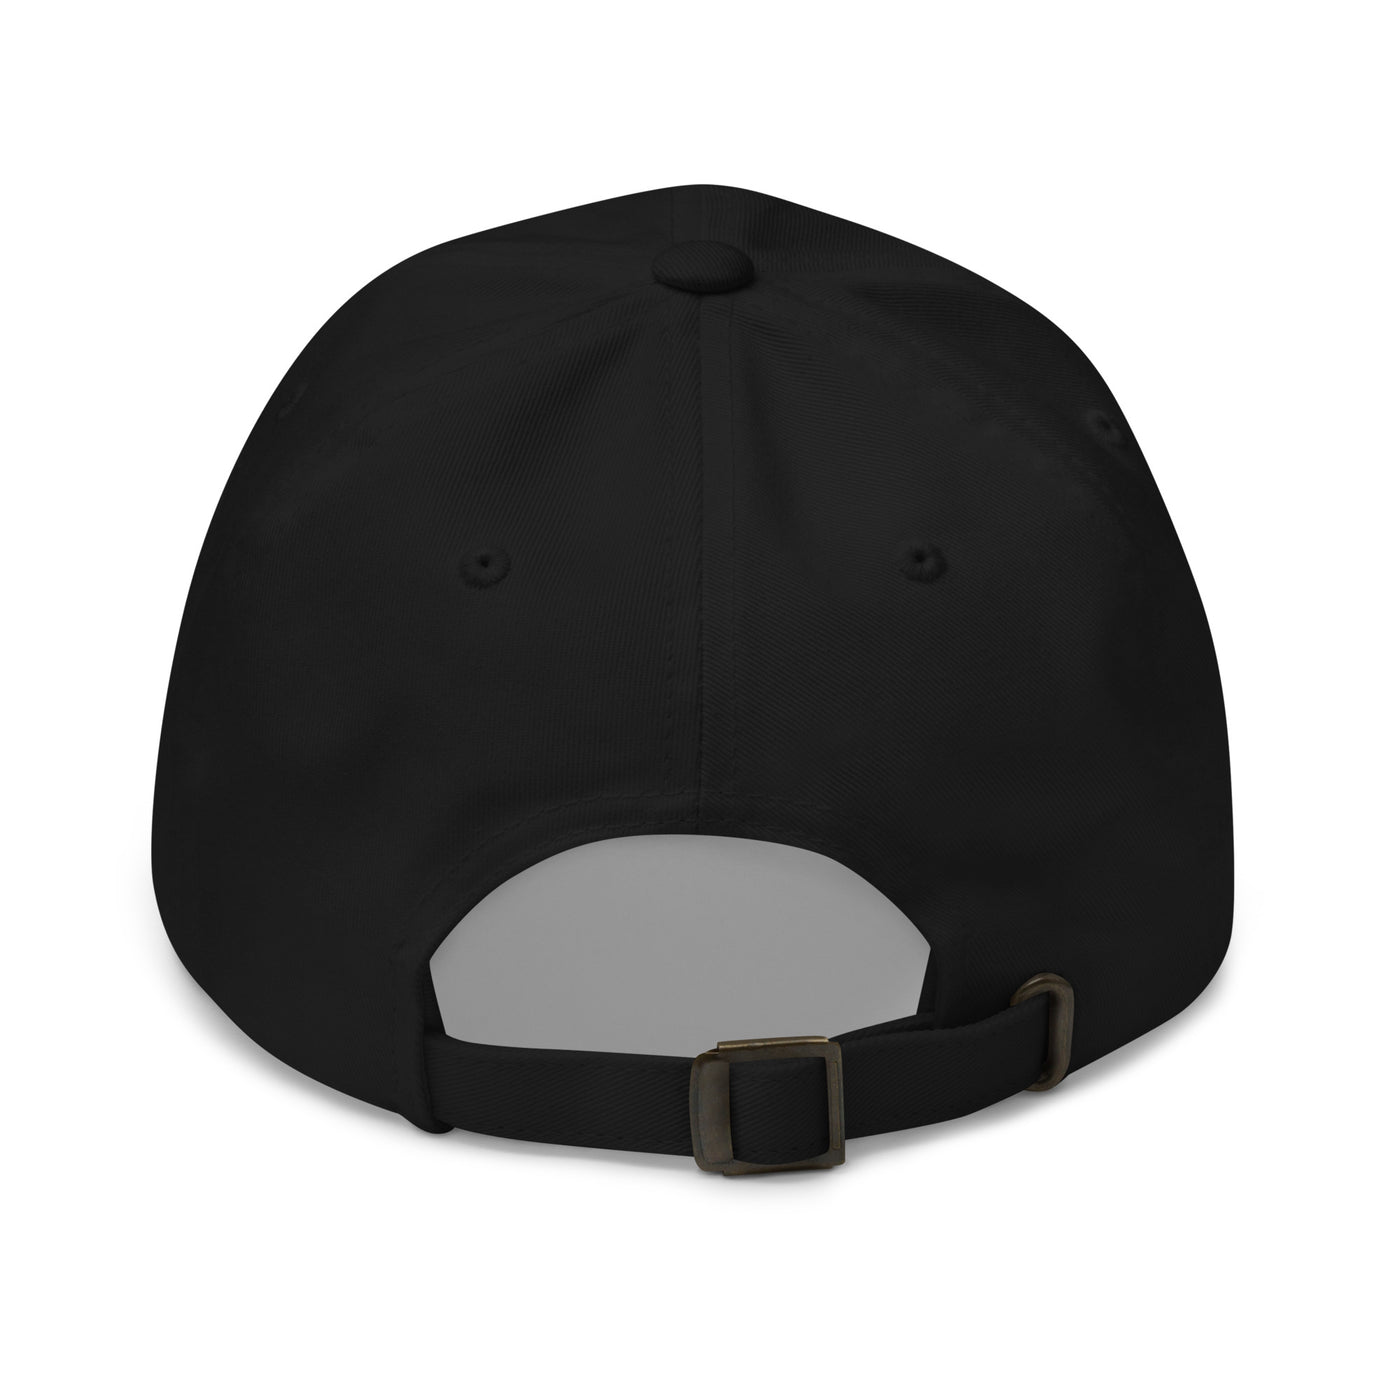 Venom Unisex Hat